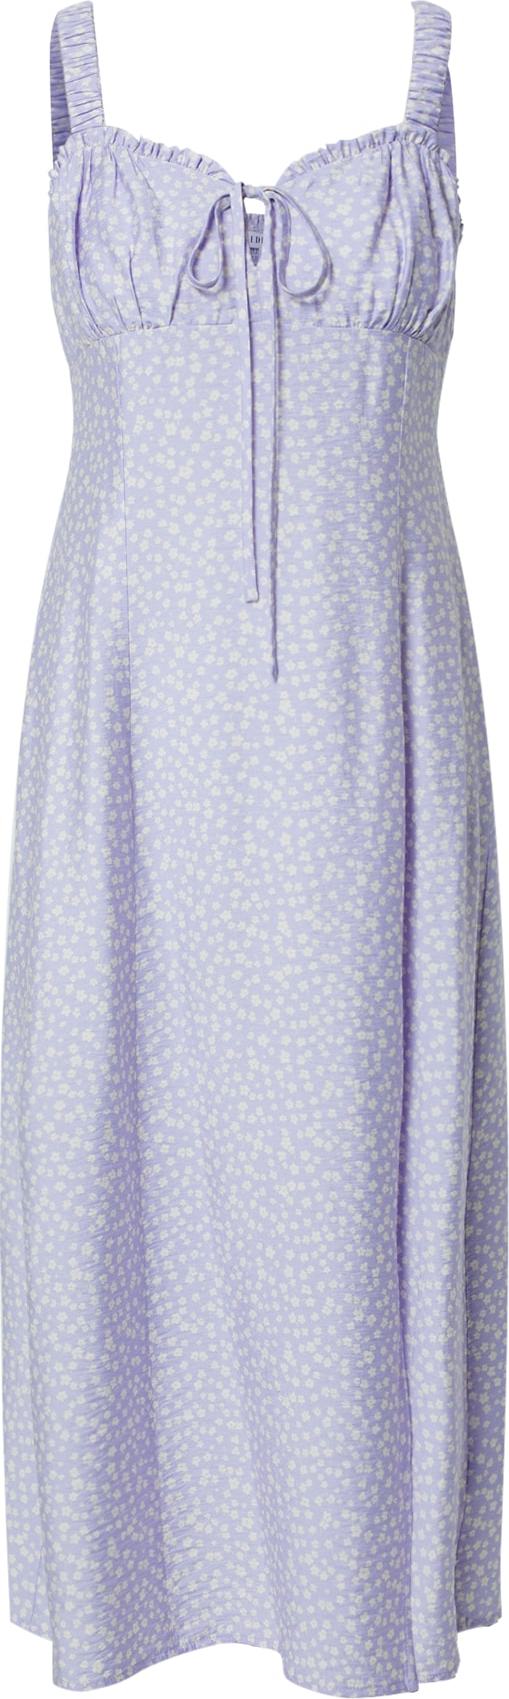 EDITED Letní šaty 'Paloma' světle fialová / bílá